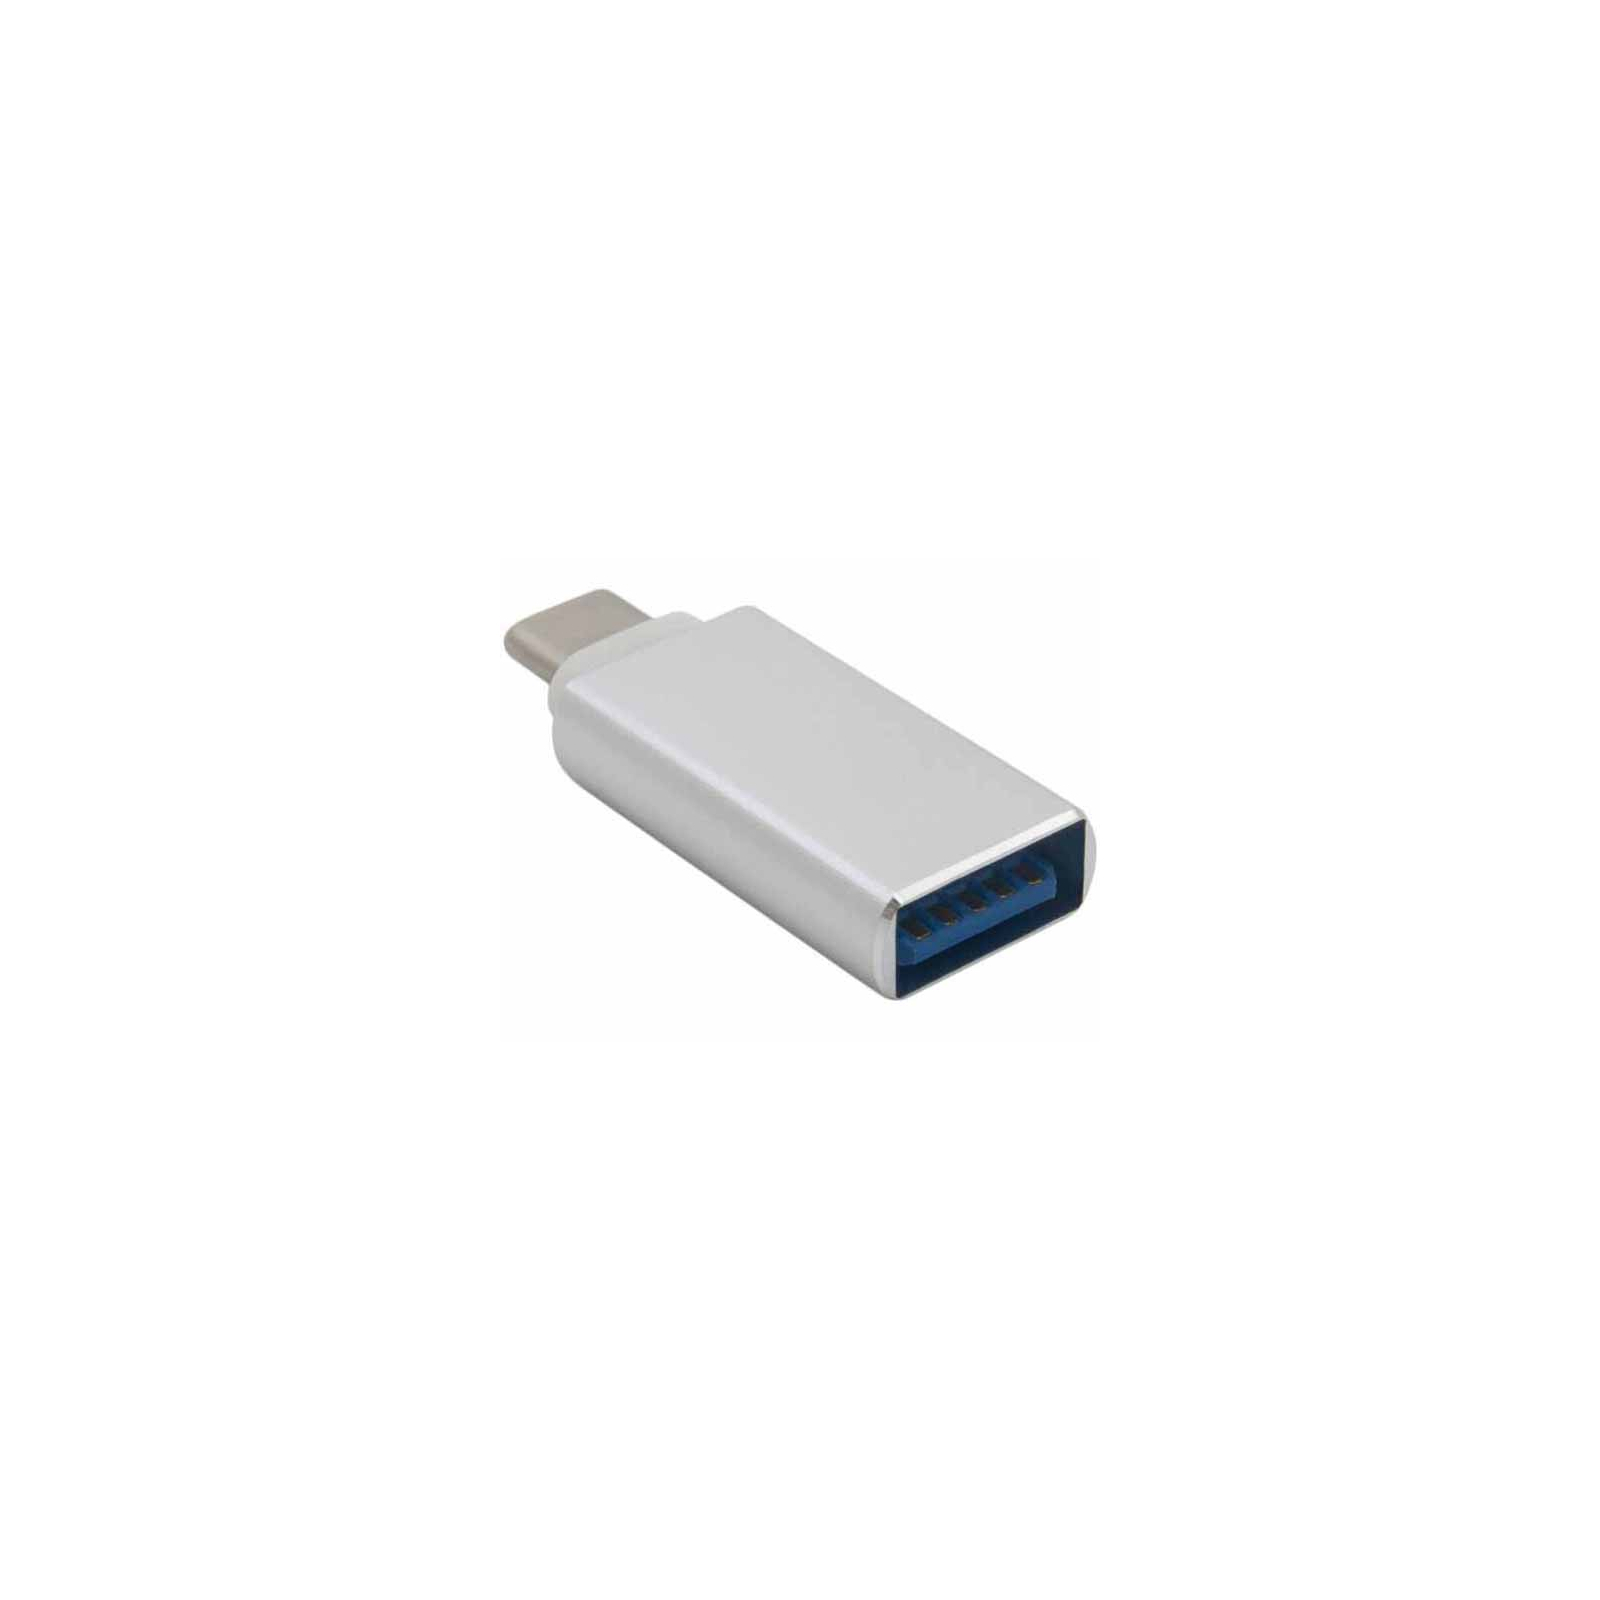 Переходник USB 3.0 Type-C to AF Extradigital (KBU1665) изображение 2